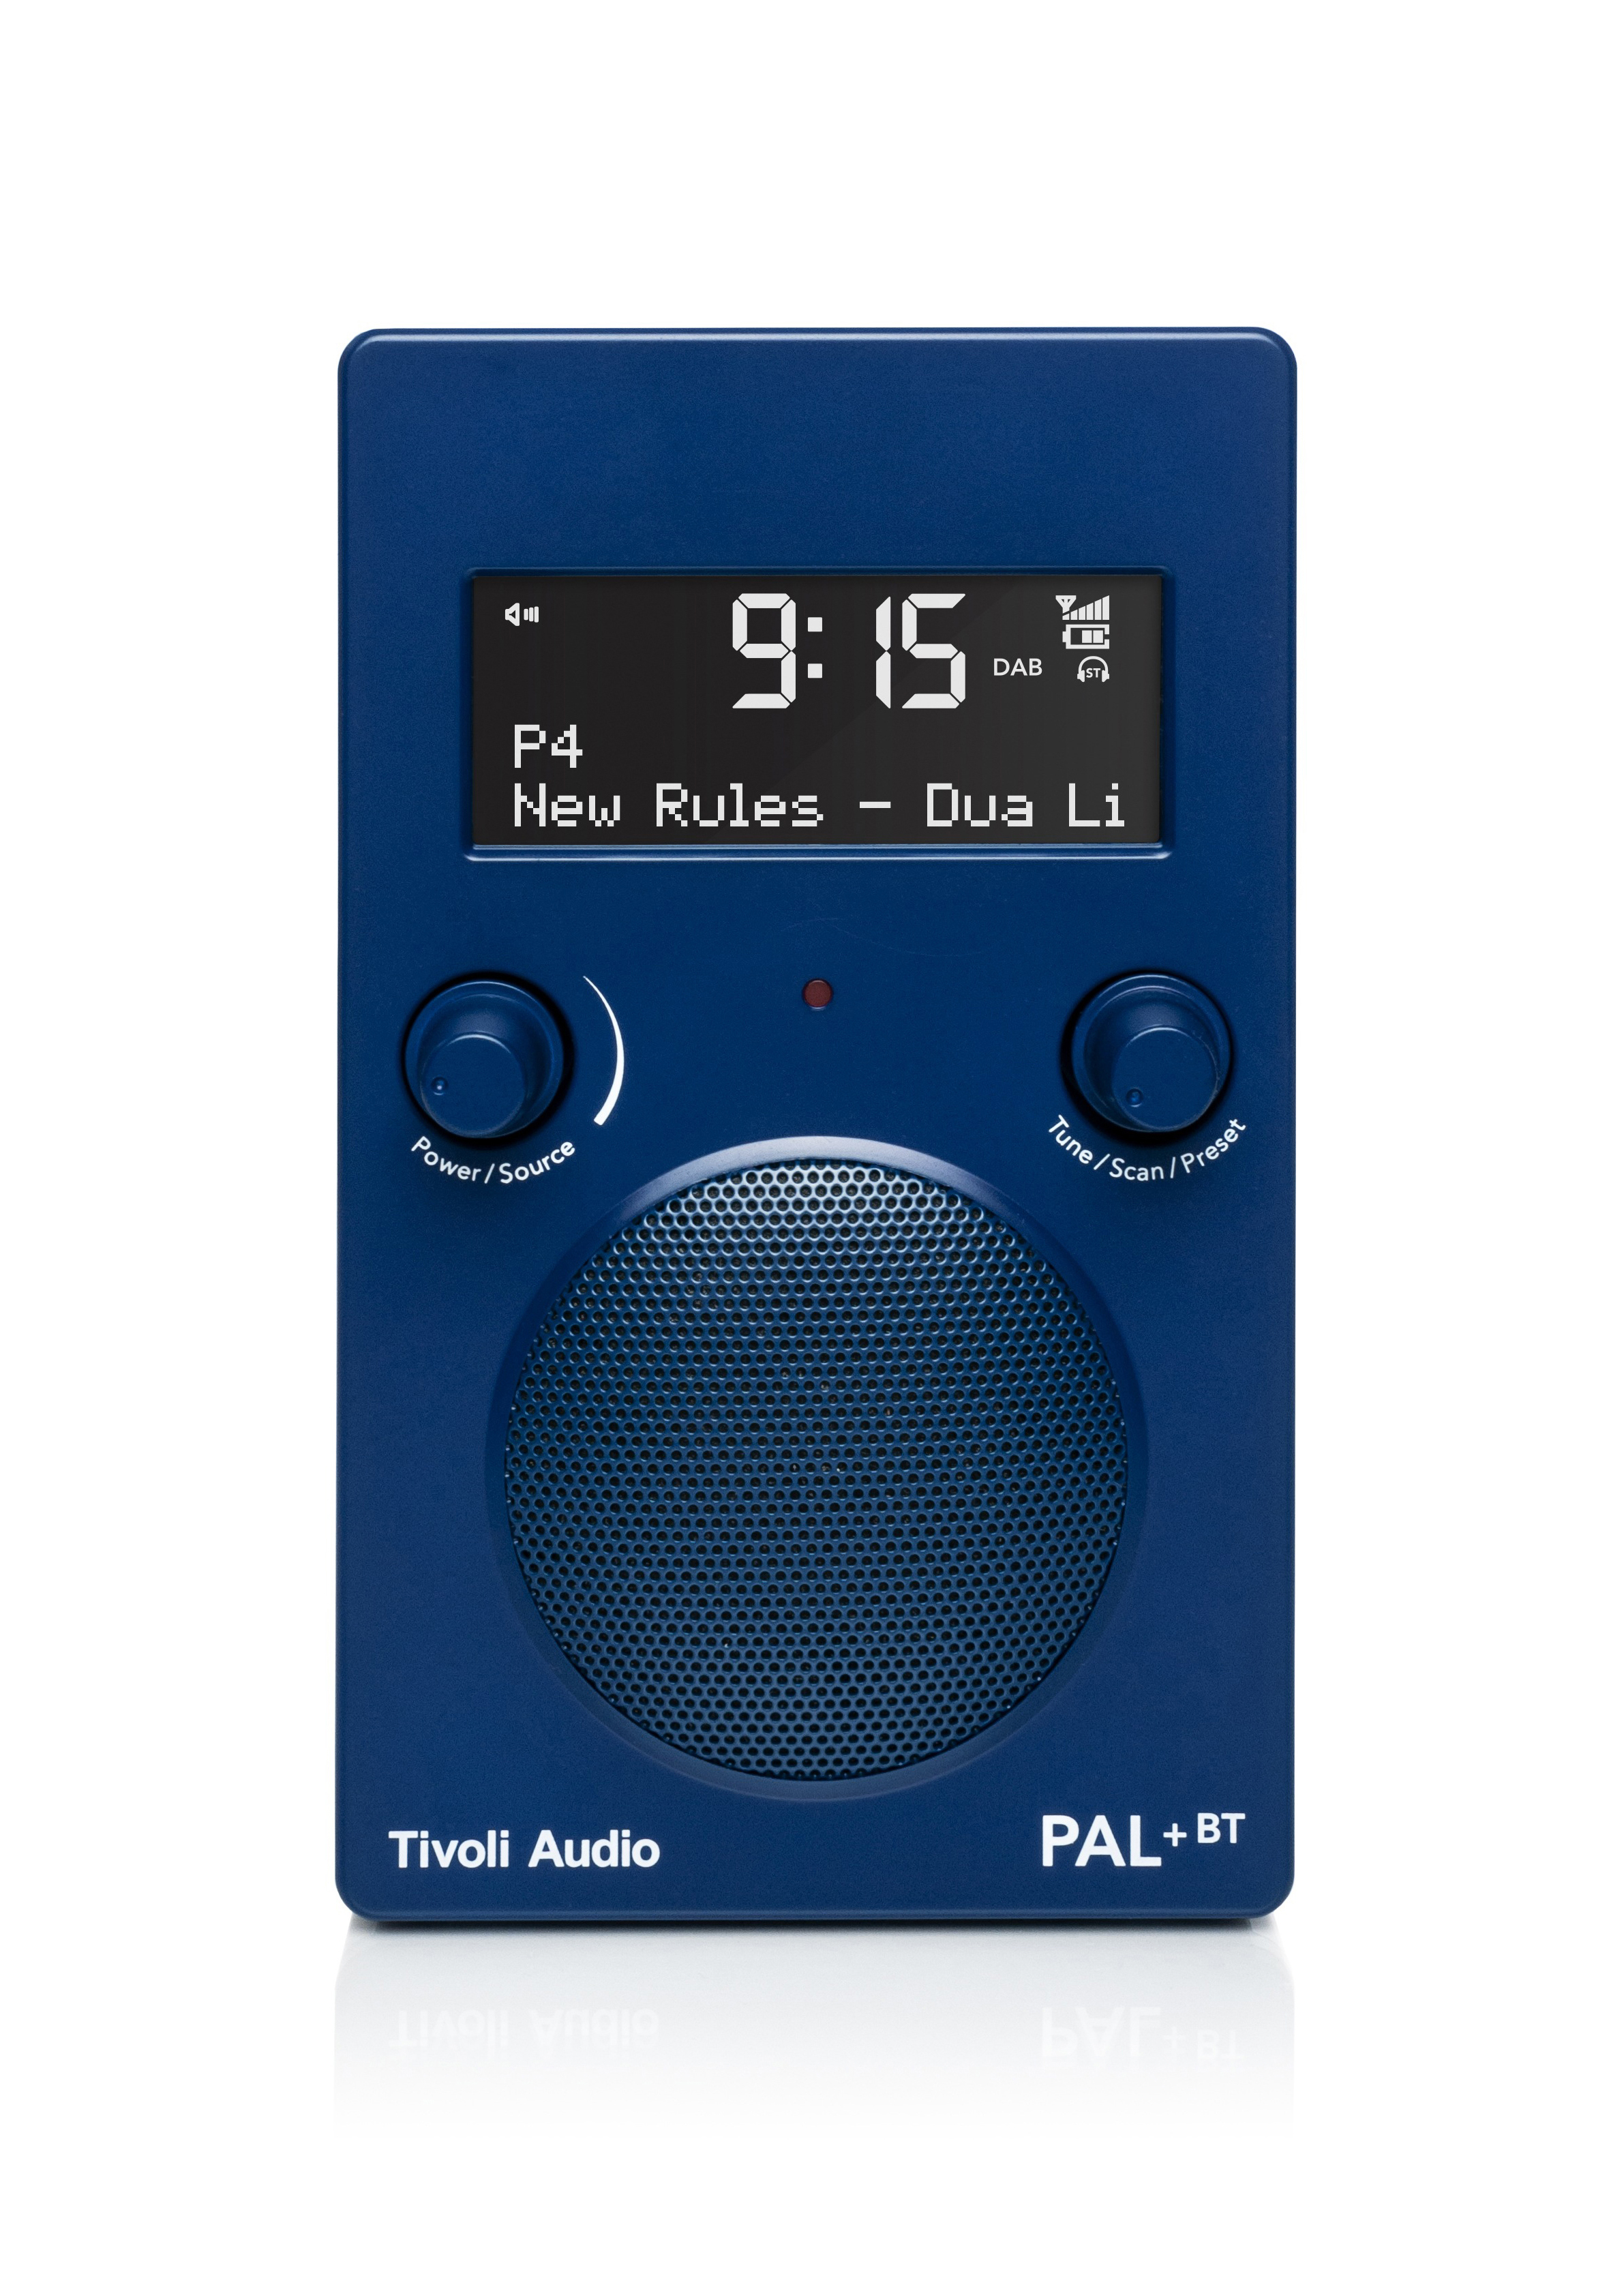 TIVOLI AUDIO PAL+ BT DAB+ DAB+, FM, DAB+, Bluetooth, Blau Radio